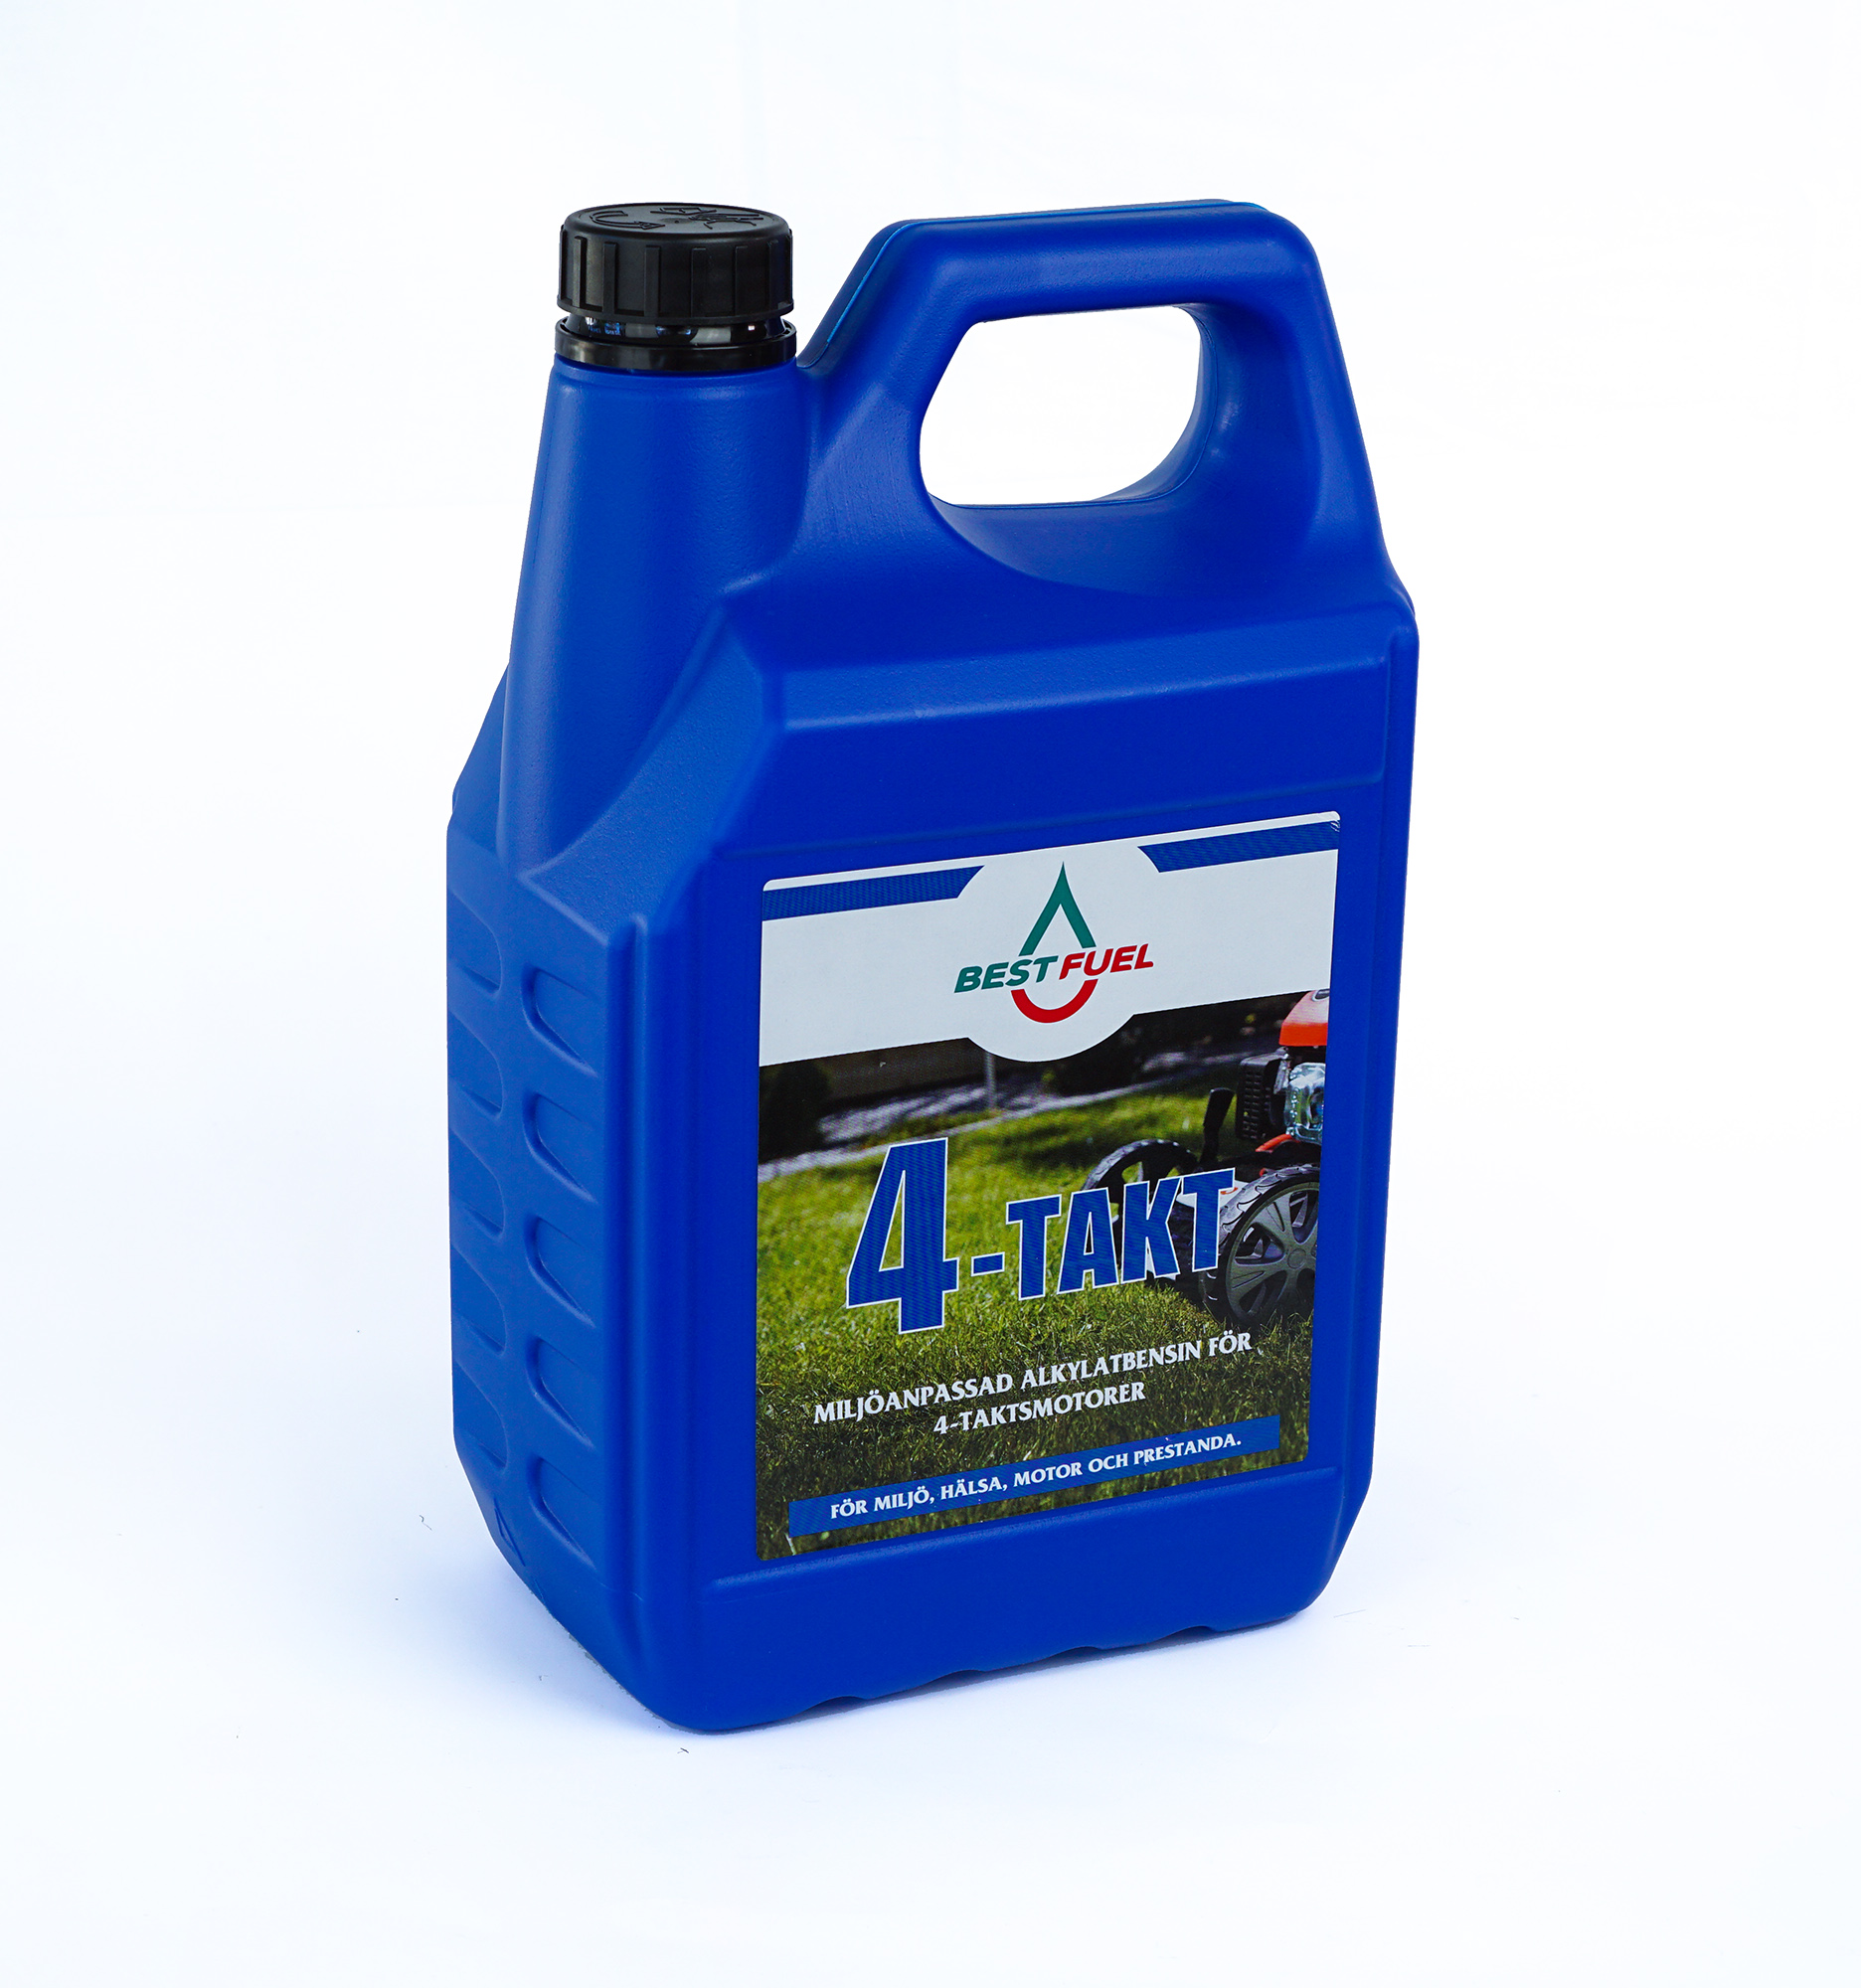 Alkylate Petrol 4-Stroke - Best fuelBest fuel